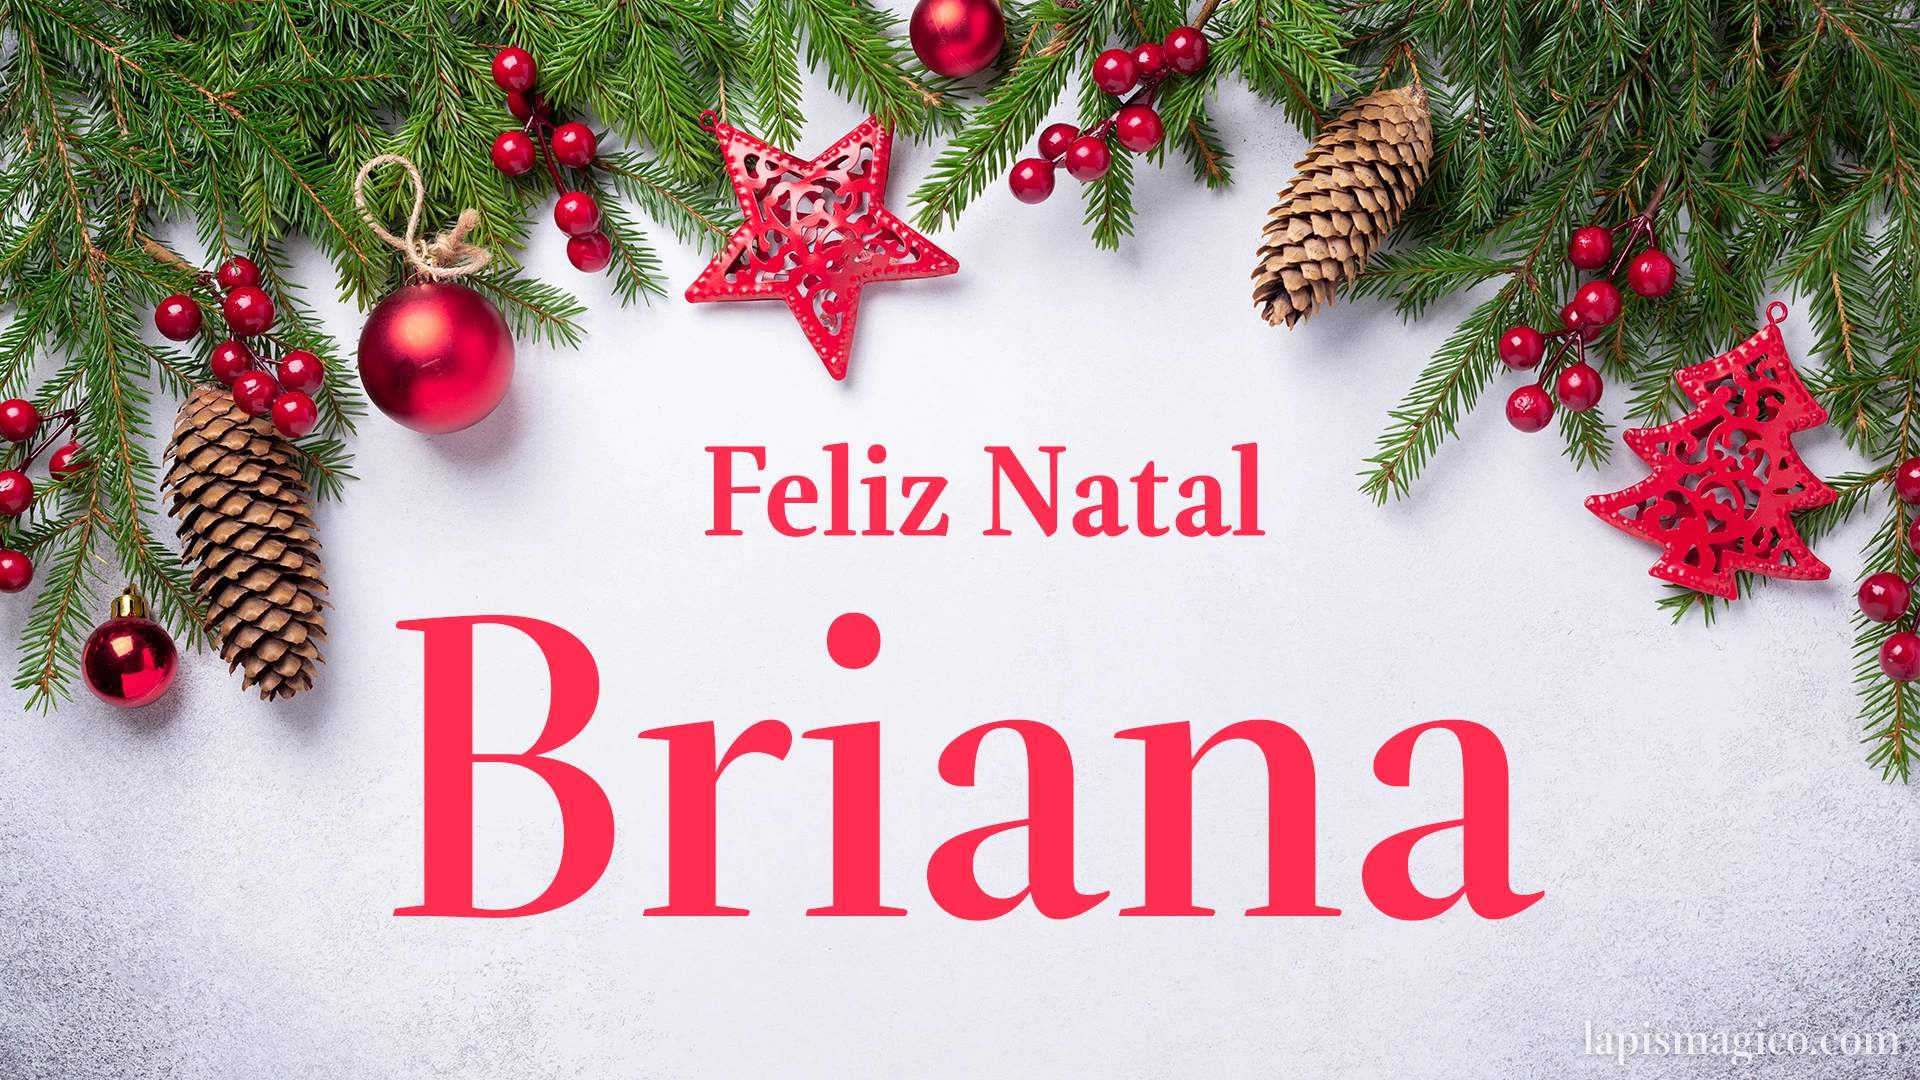 Oh Briana, cinco postais de Feliz Natal Postal com o teu nome